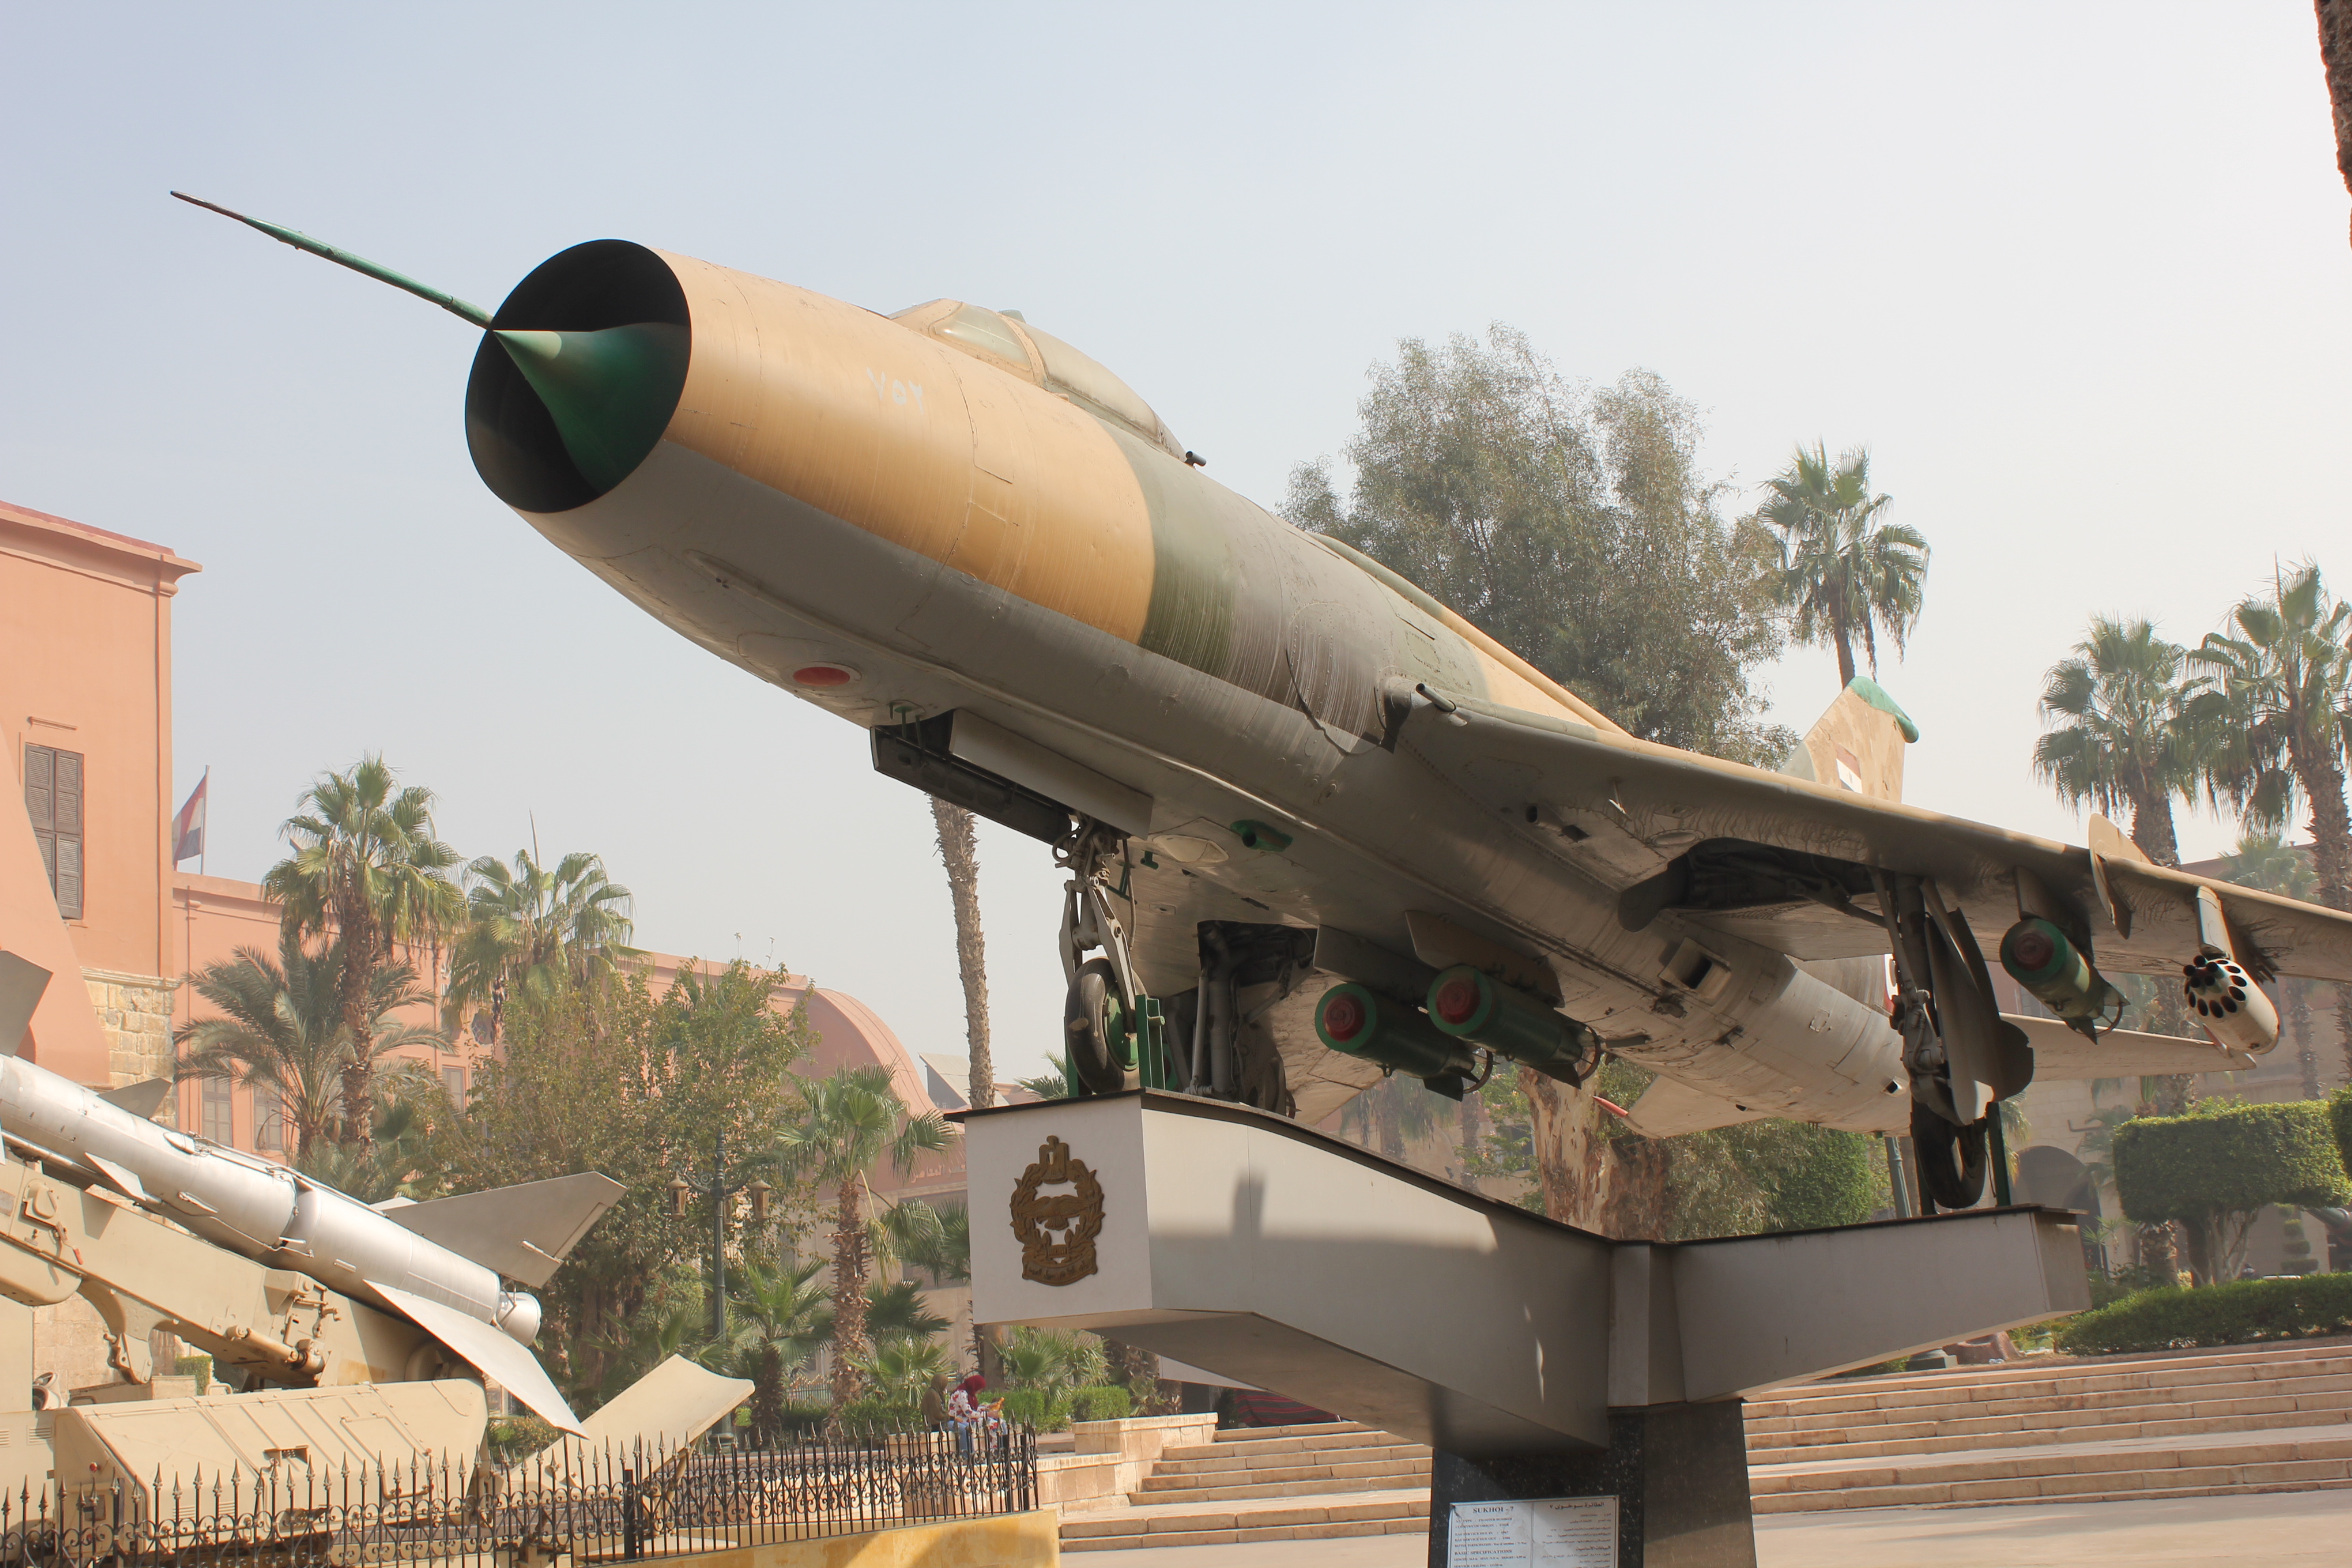 مقاتلة من طراز ميغ في المتحف الحربي المصري - القاهرة - مصر. الصورة: ملهم الملائكة 